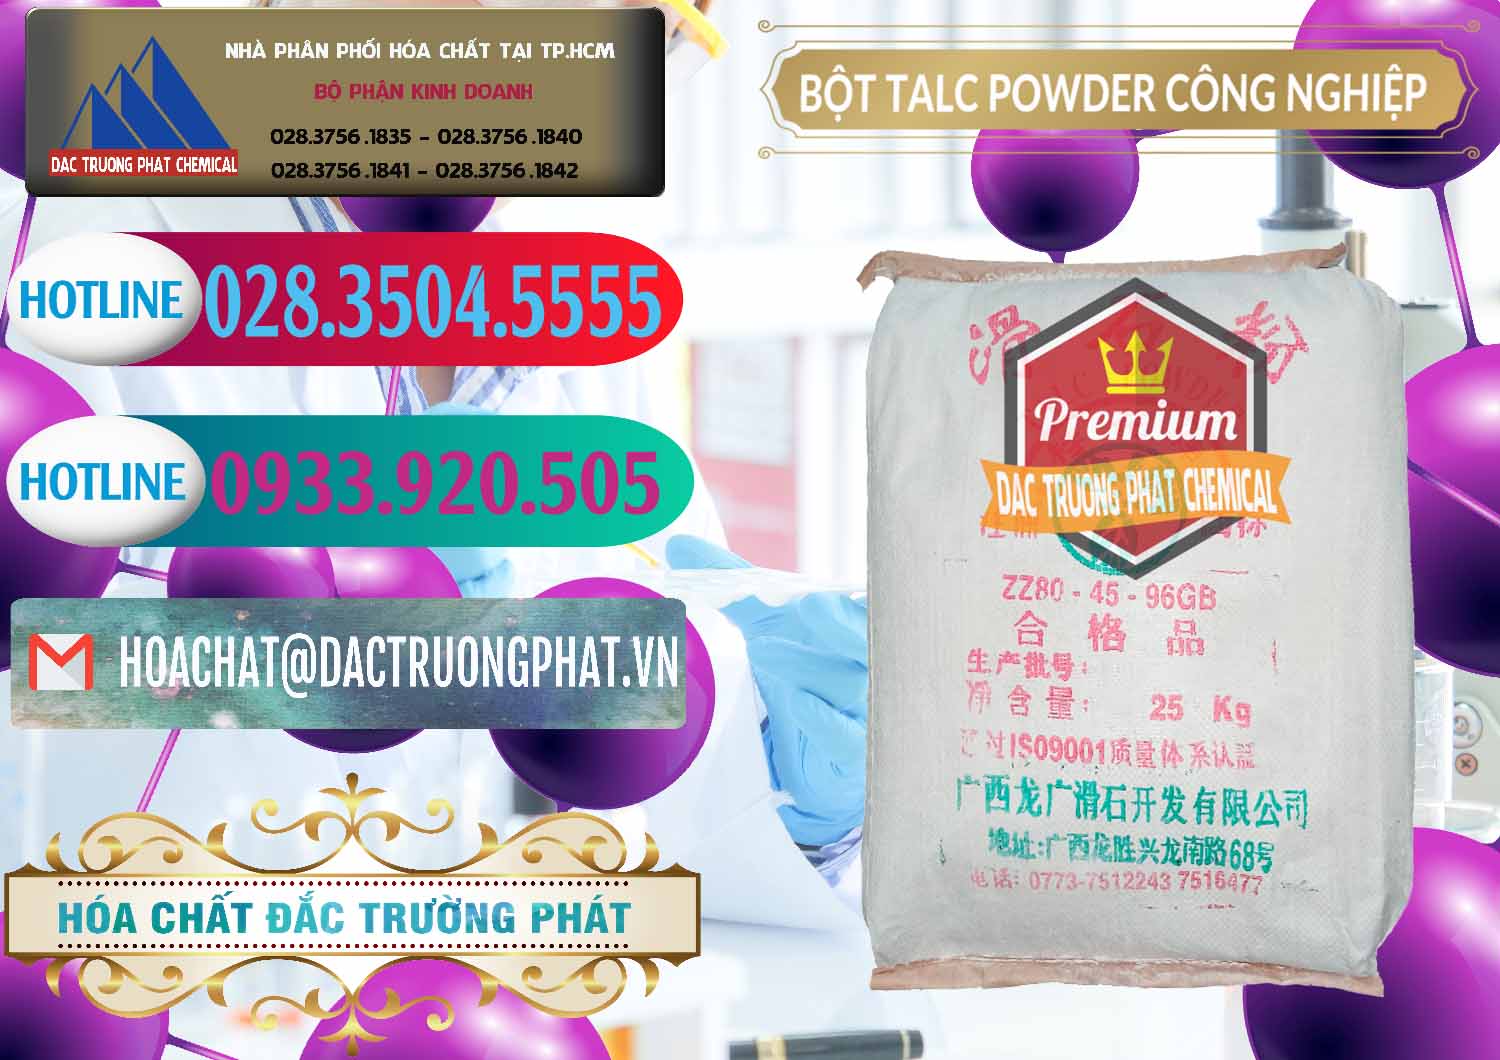 Nơi kinh doanh & bán Bột Talc Powder Công Nghiệp Trung Quốc China - 0037 - Cty kinh doanh & phân phối hóa chất tại TP.HCM - truongphat.vn